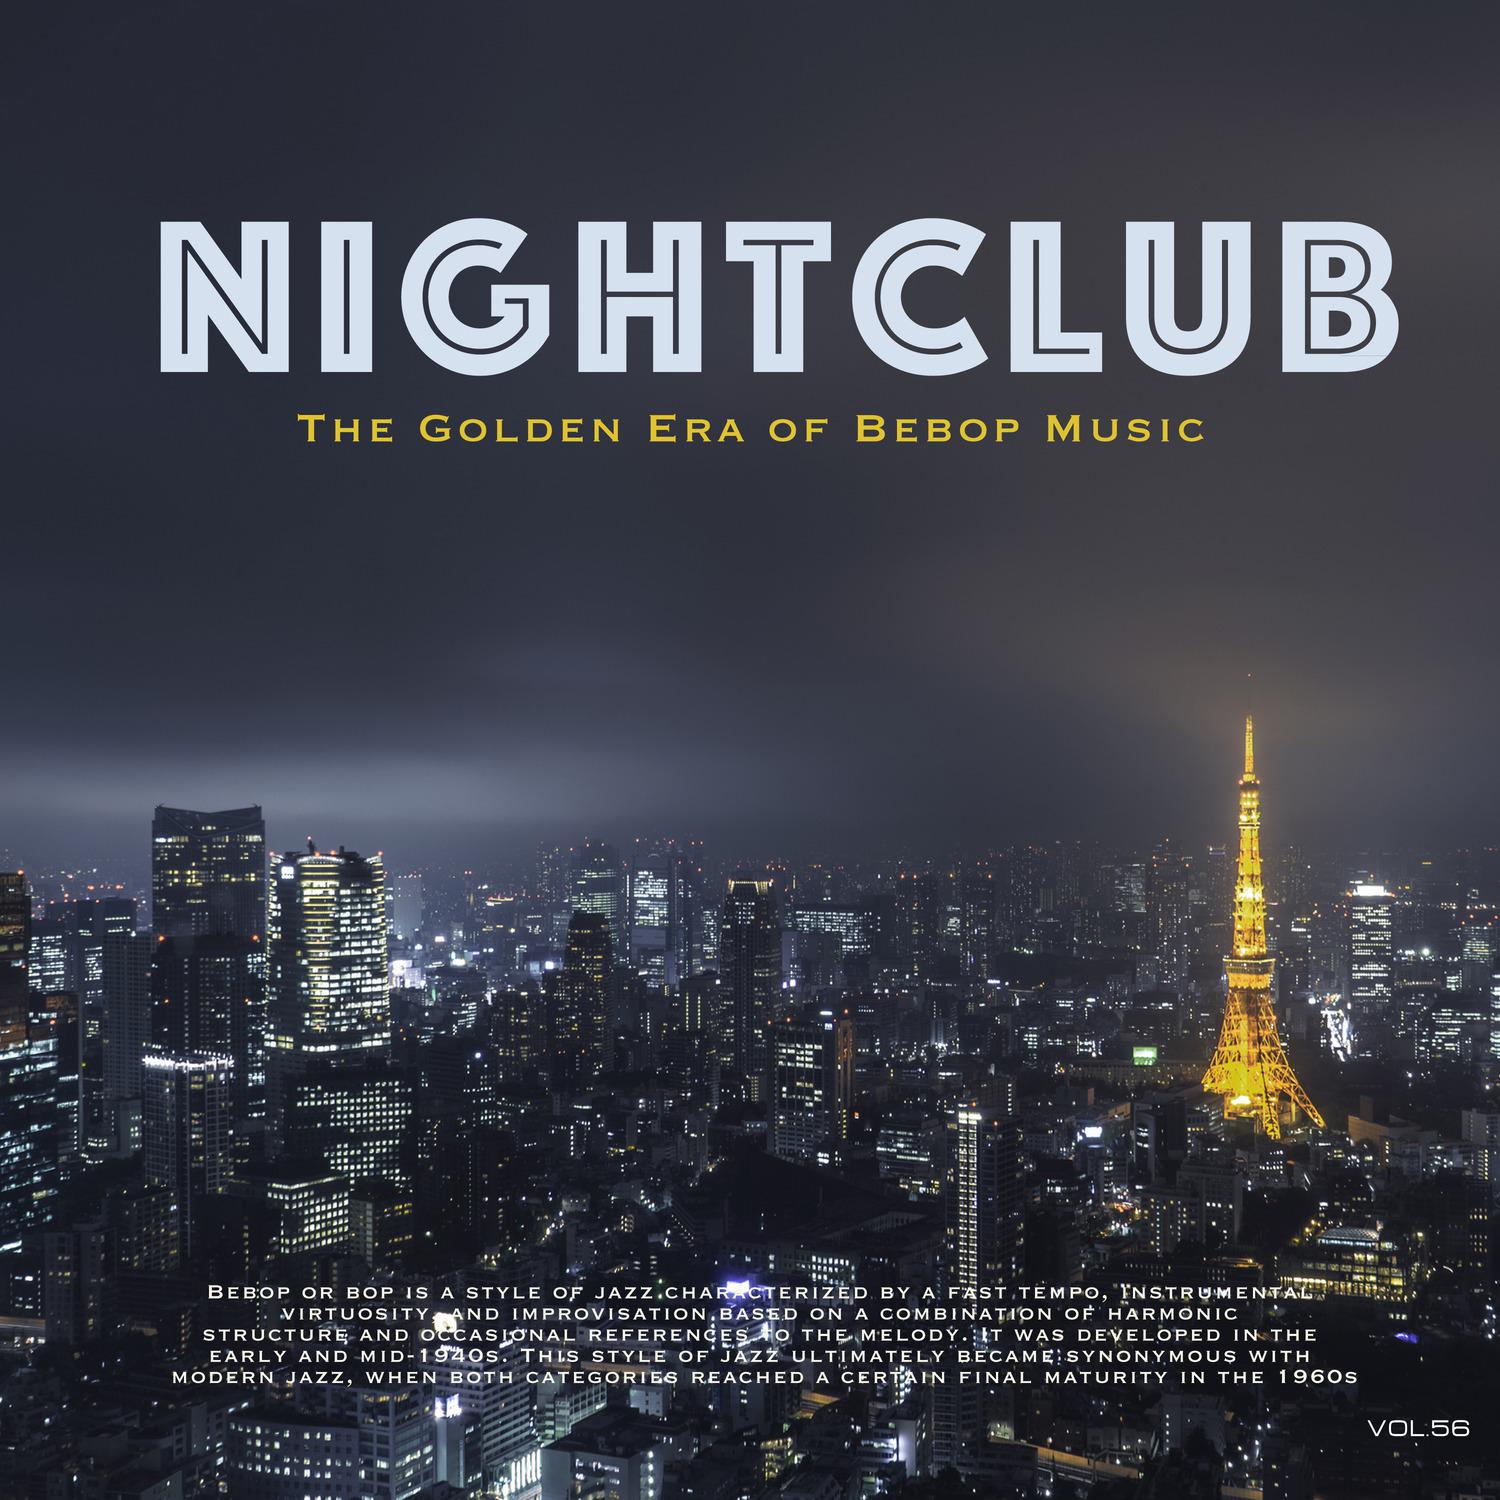 Nightclub, Vol. 56 (The Golden Era of Bebop Music)